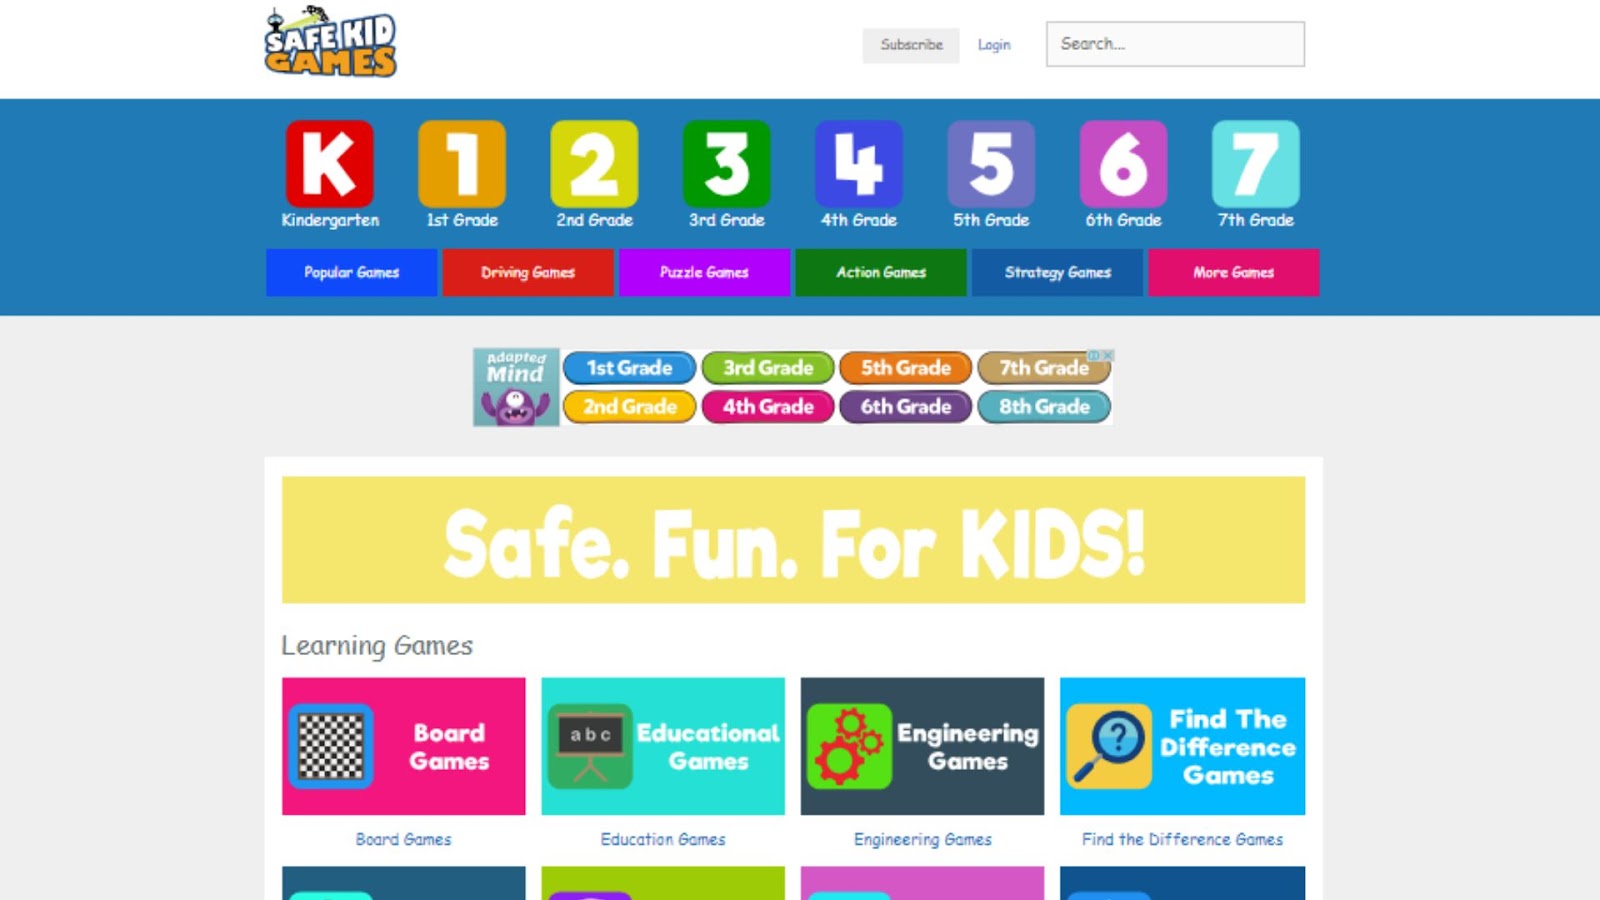 safe kid games website interface 